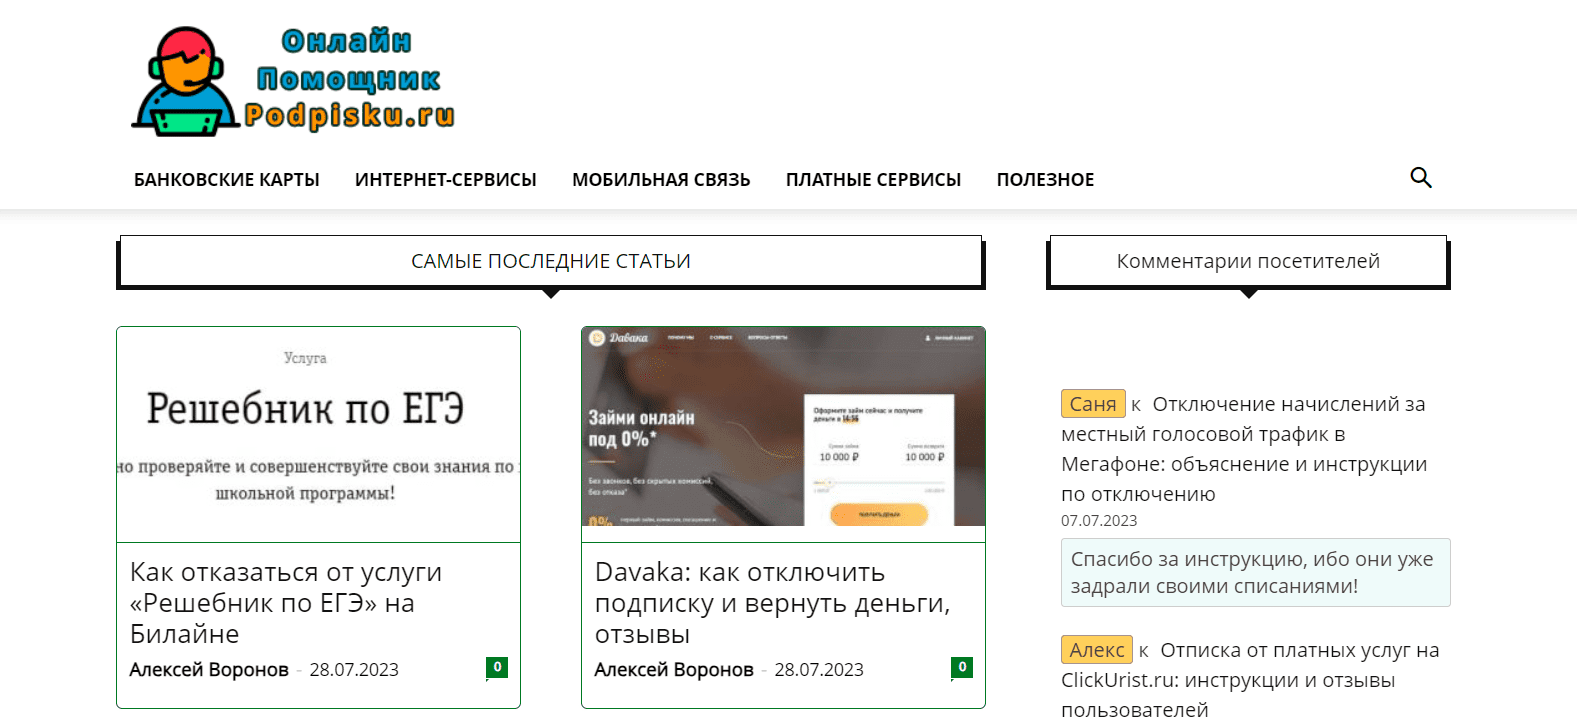 Podpisku.ru - официальный сайт